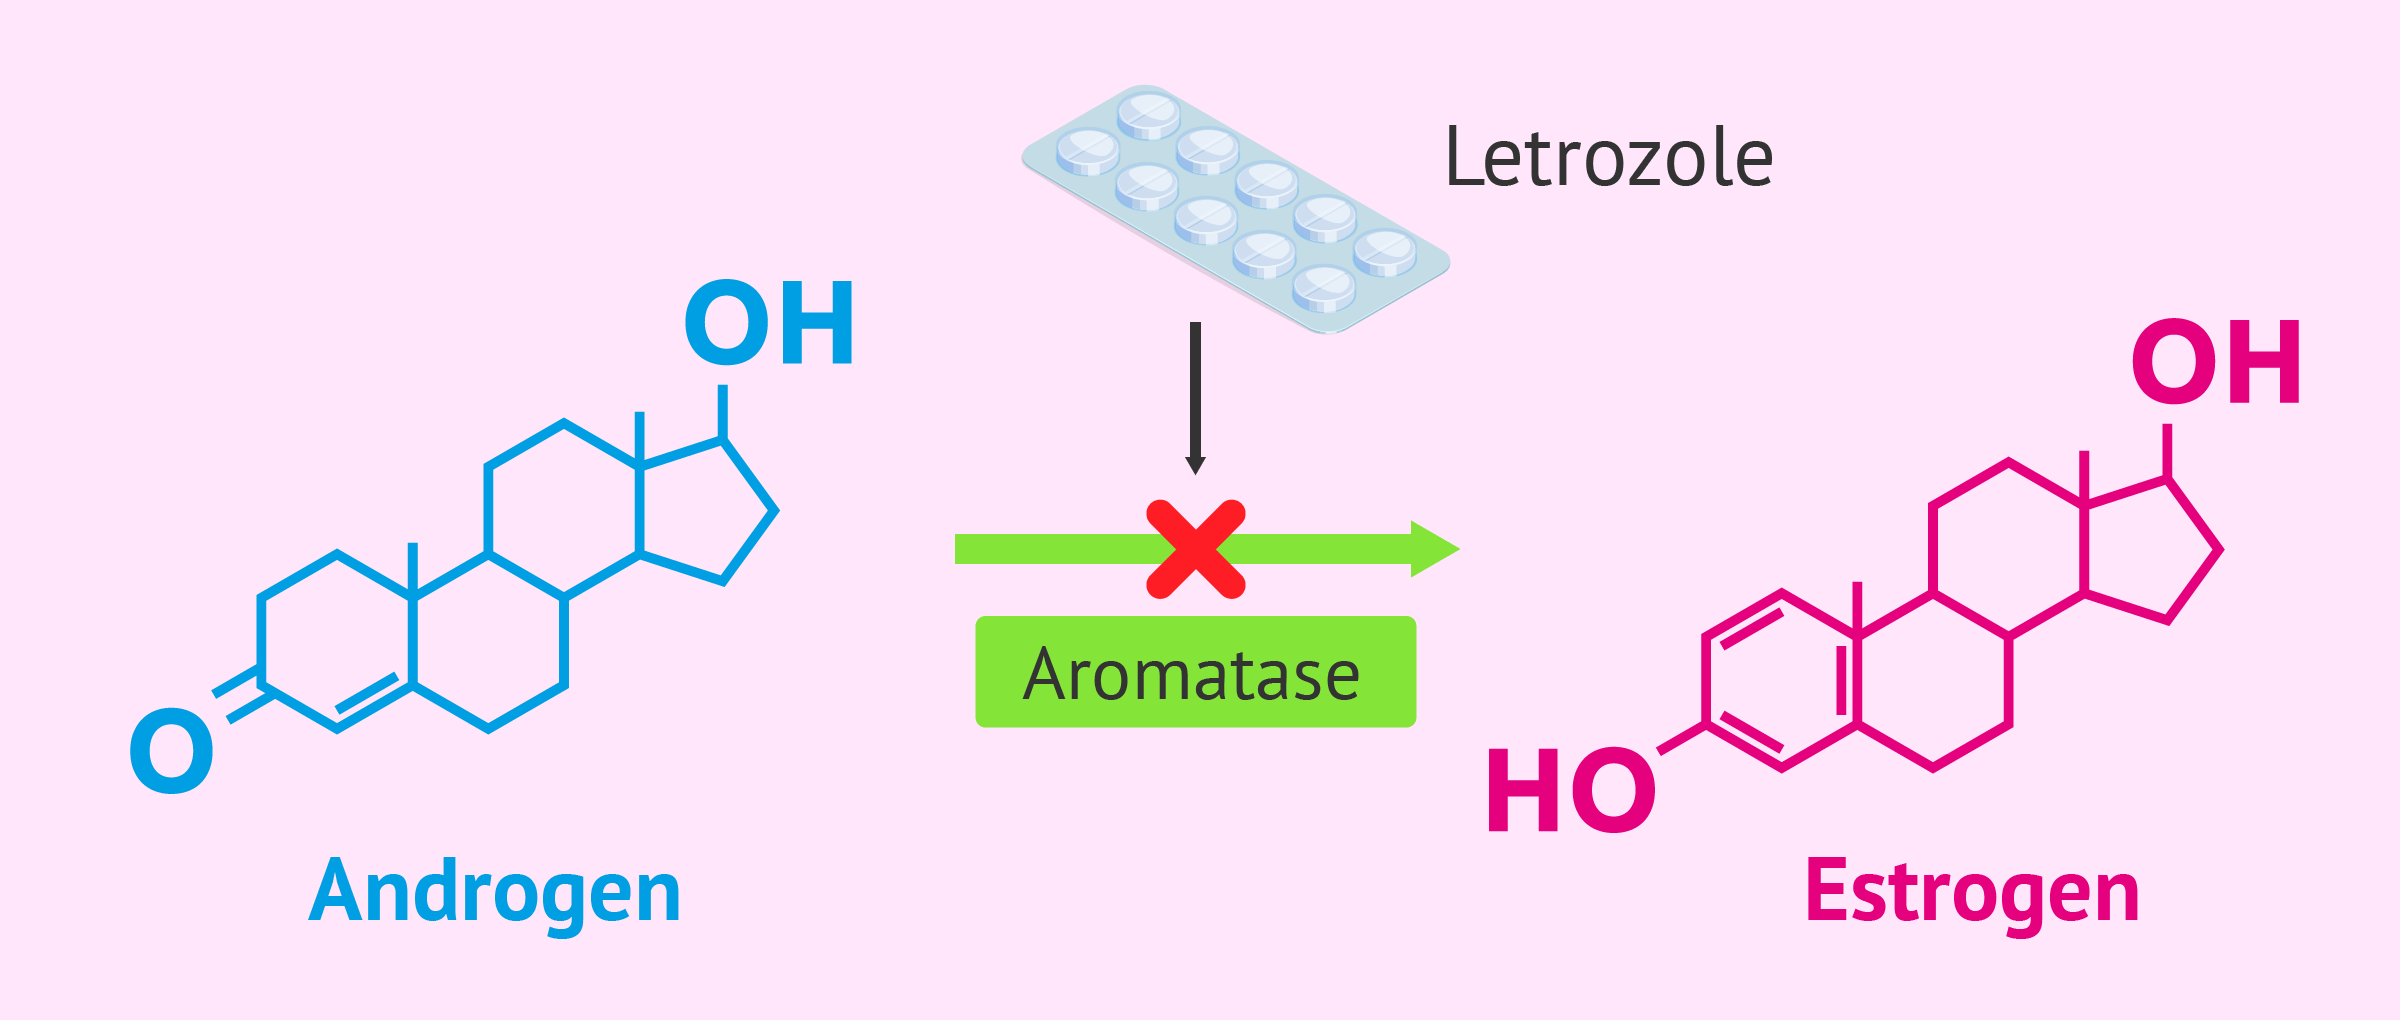 Letrozole action mechanism